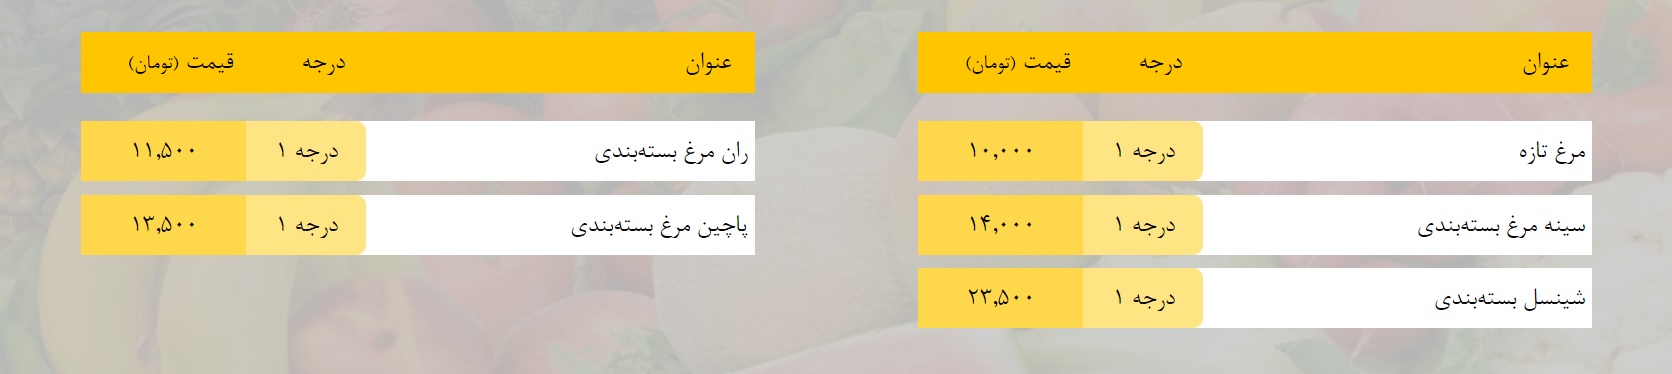 قیمت روز میوه، تره‌بار، گوشت و محصولات پروتئینی در بازار مشهد ۶ فروردین ۹۹